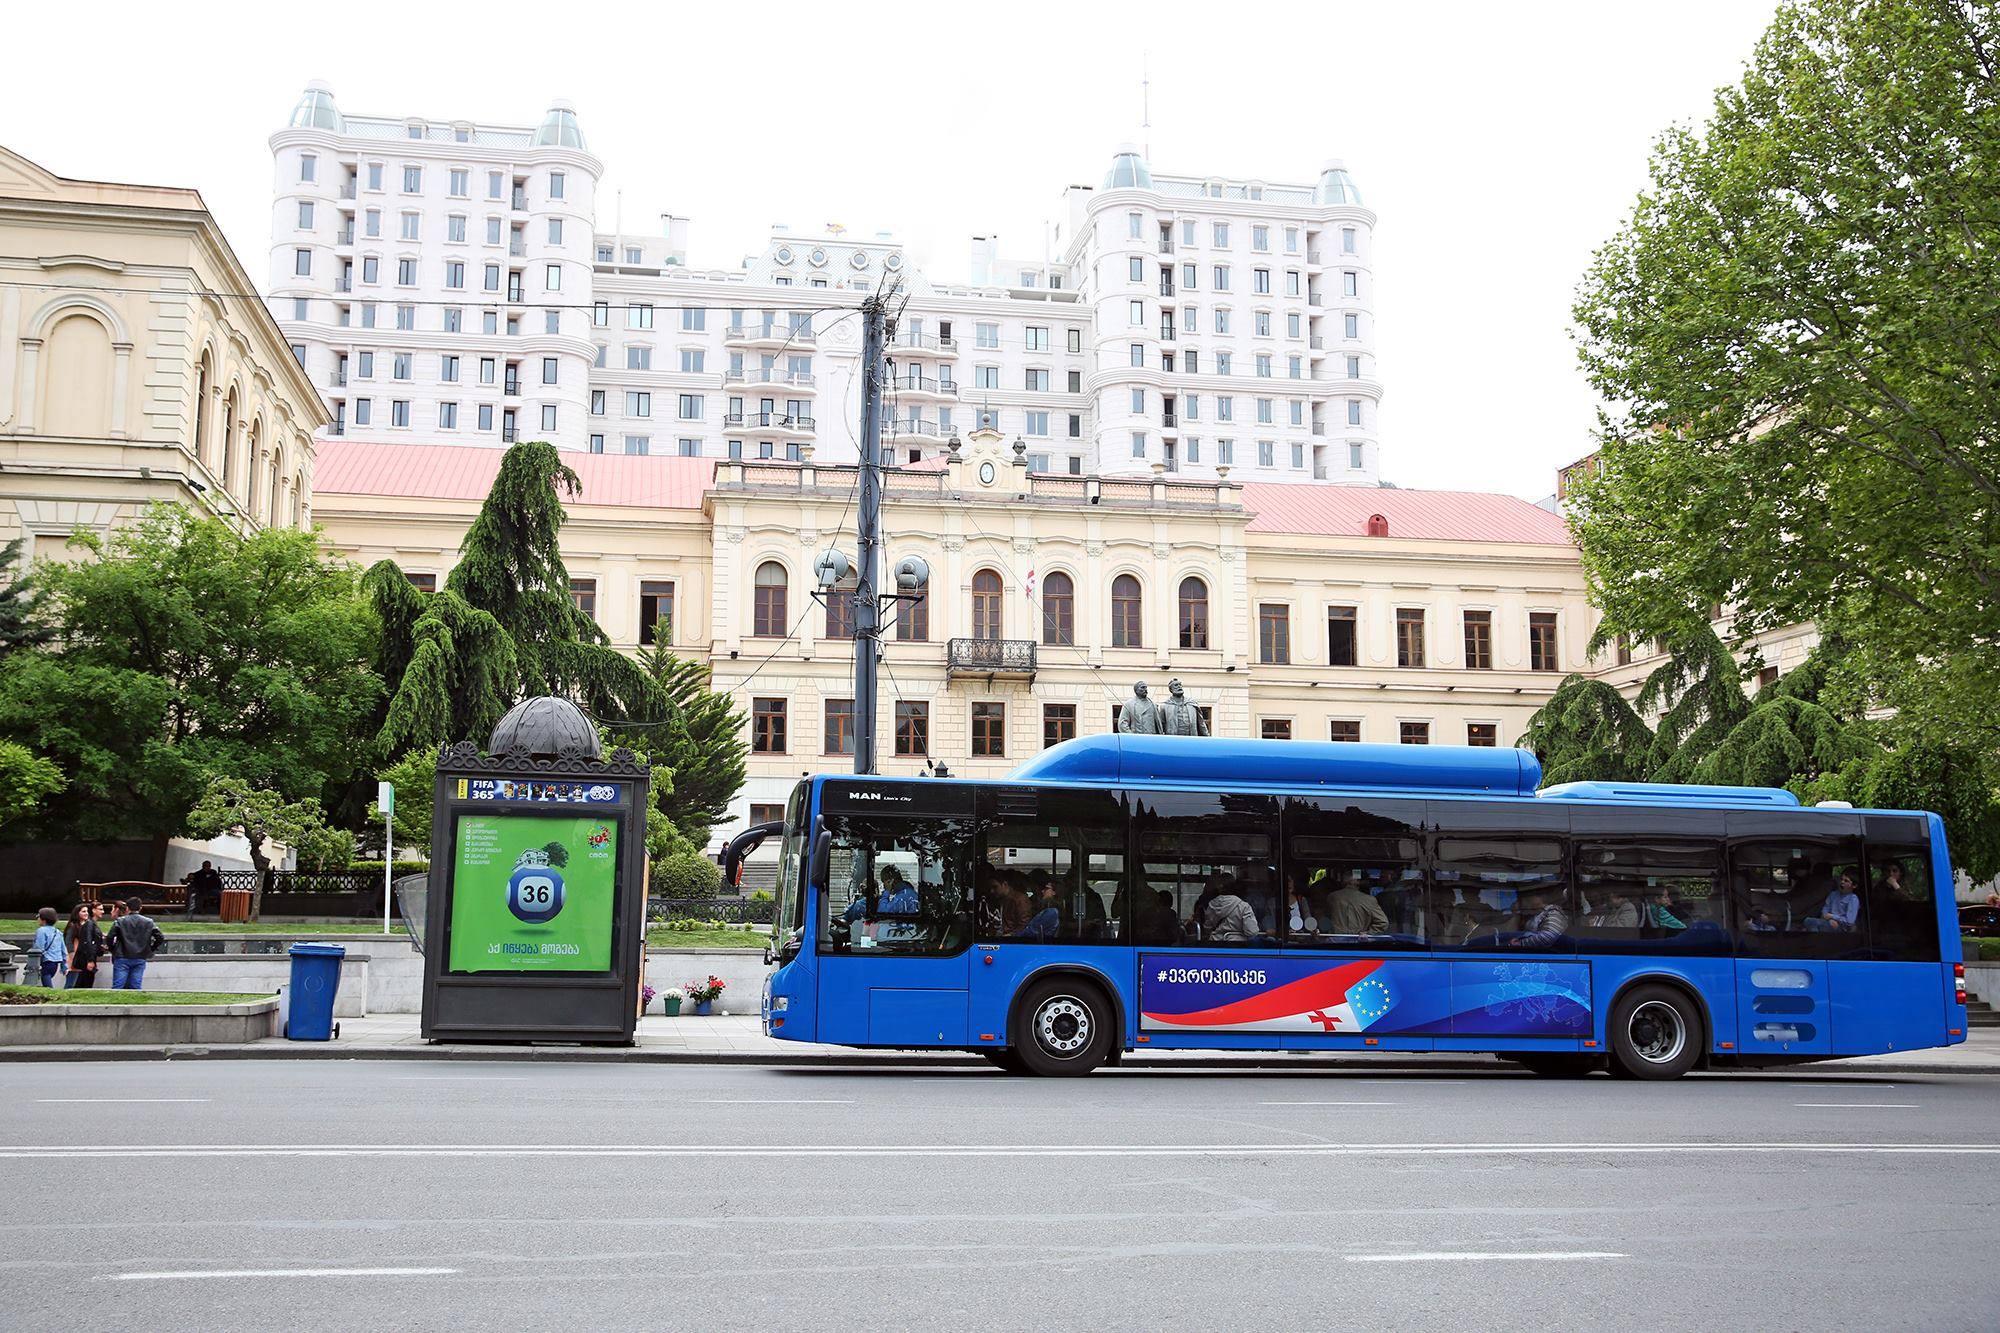 Add 19. Автобусы в Тбилиси. Тбилисский автобус. Общественные автобусы в Тбилиси. Тбилиси автобусы синие.